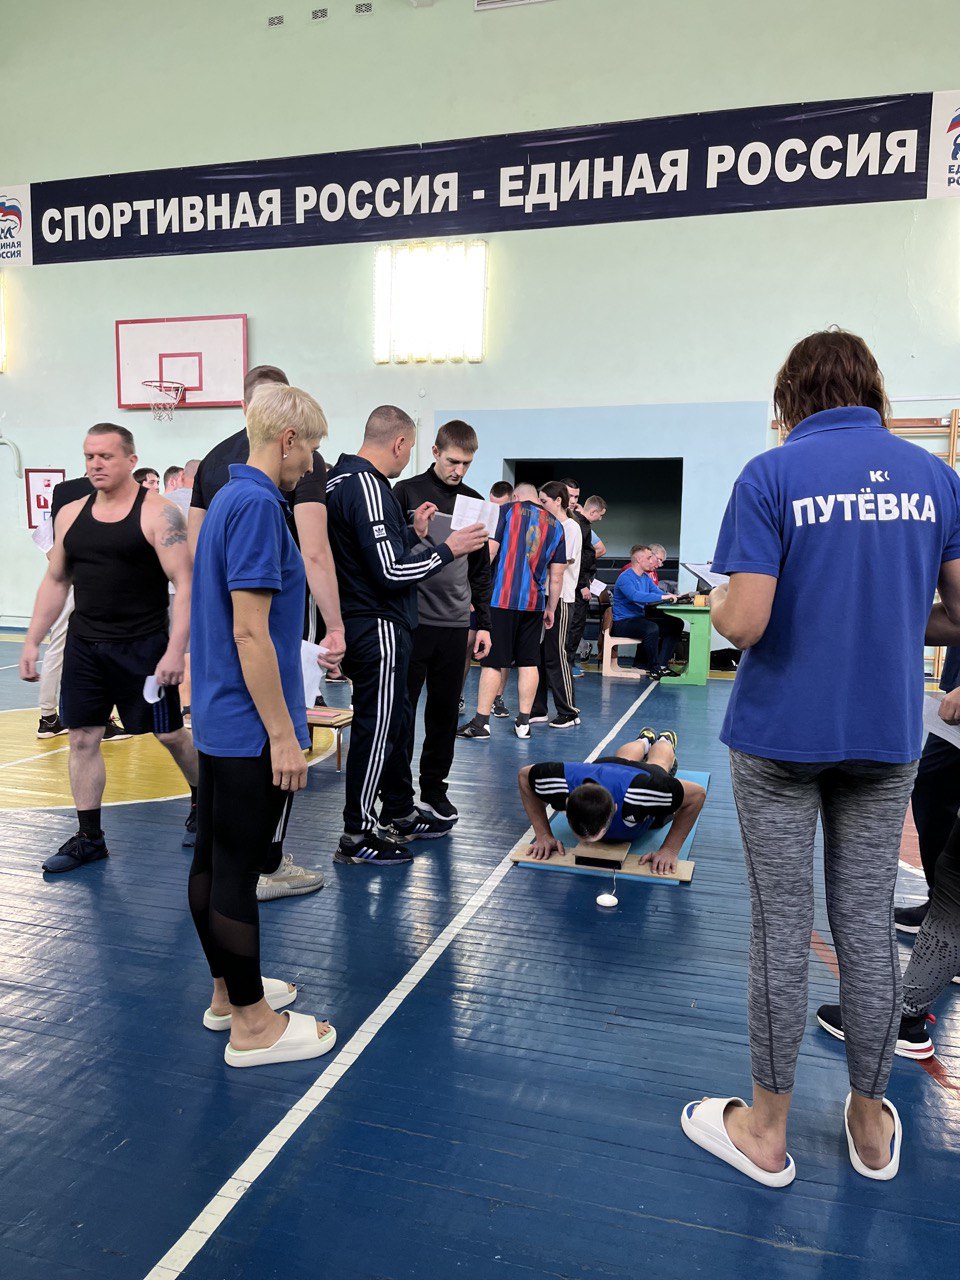 Всероссийский физкультурно-спортивный комплекс «Готов к труду и обороне»